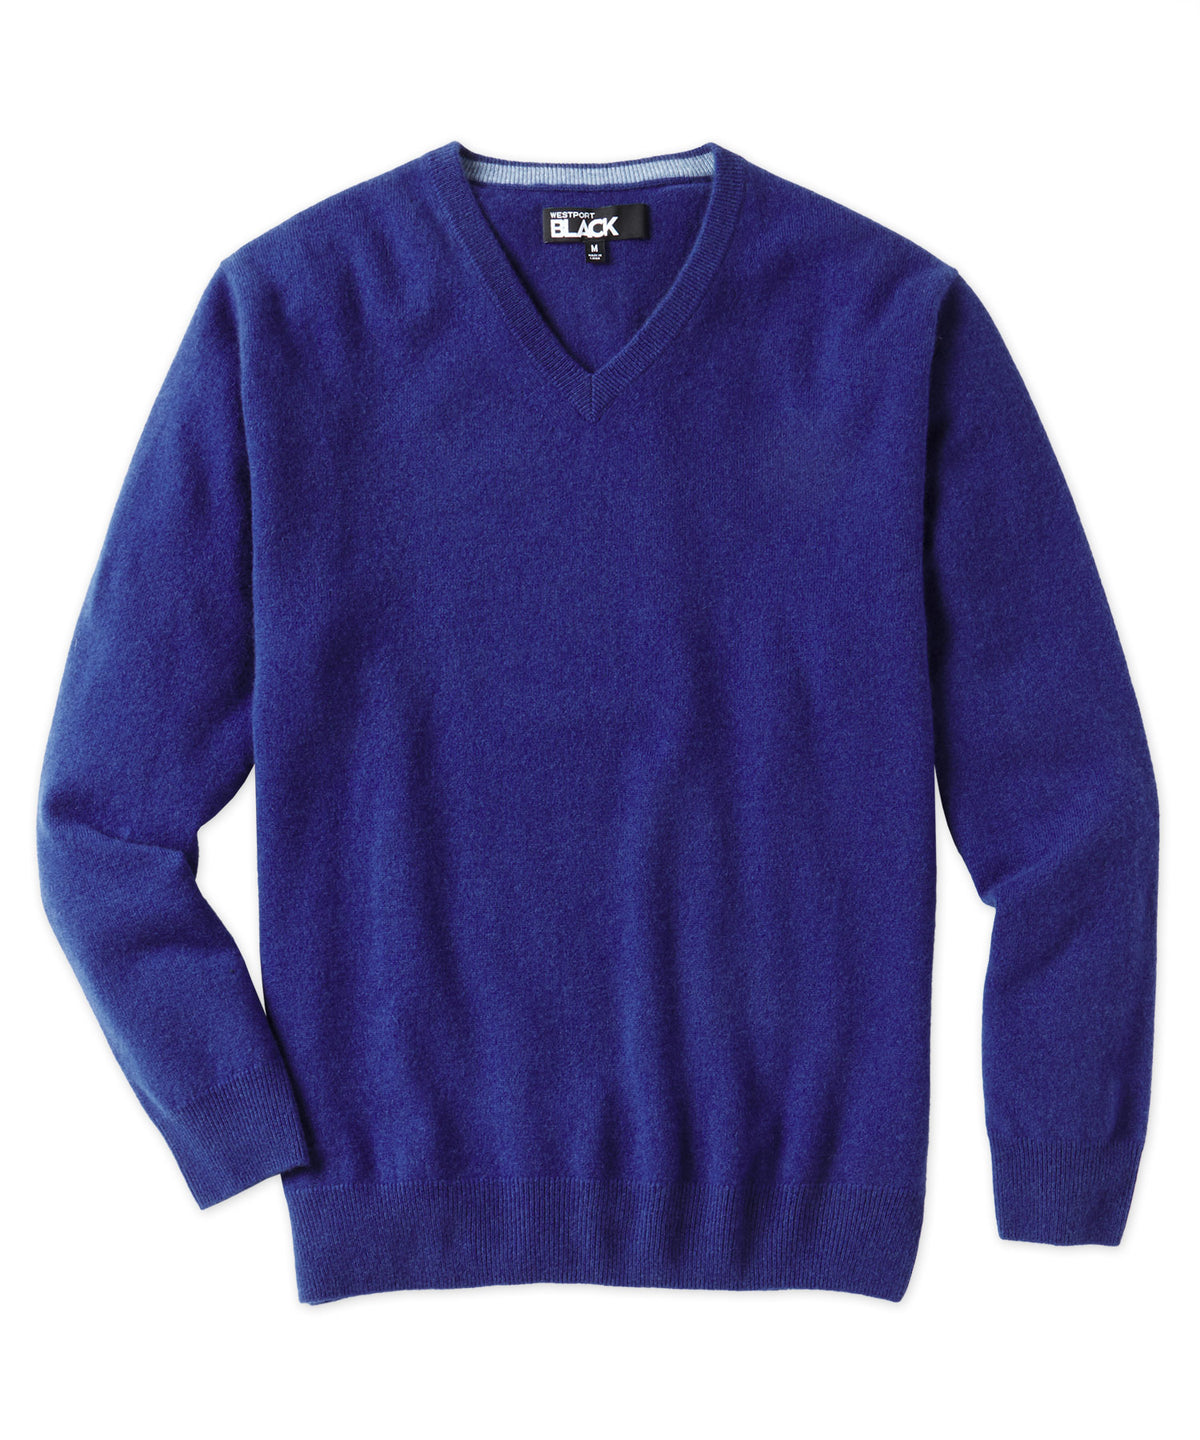 Westport Black Greenwich Cashmere V-Neck Sweater